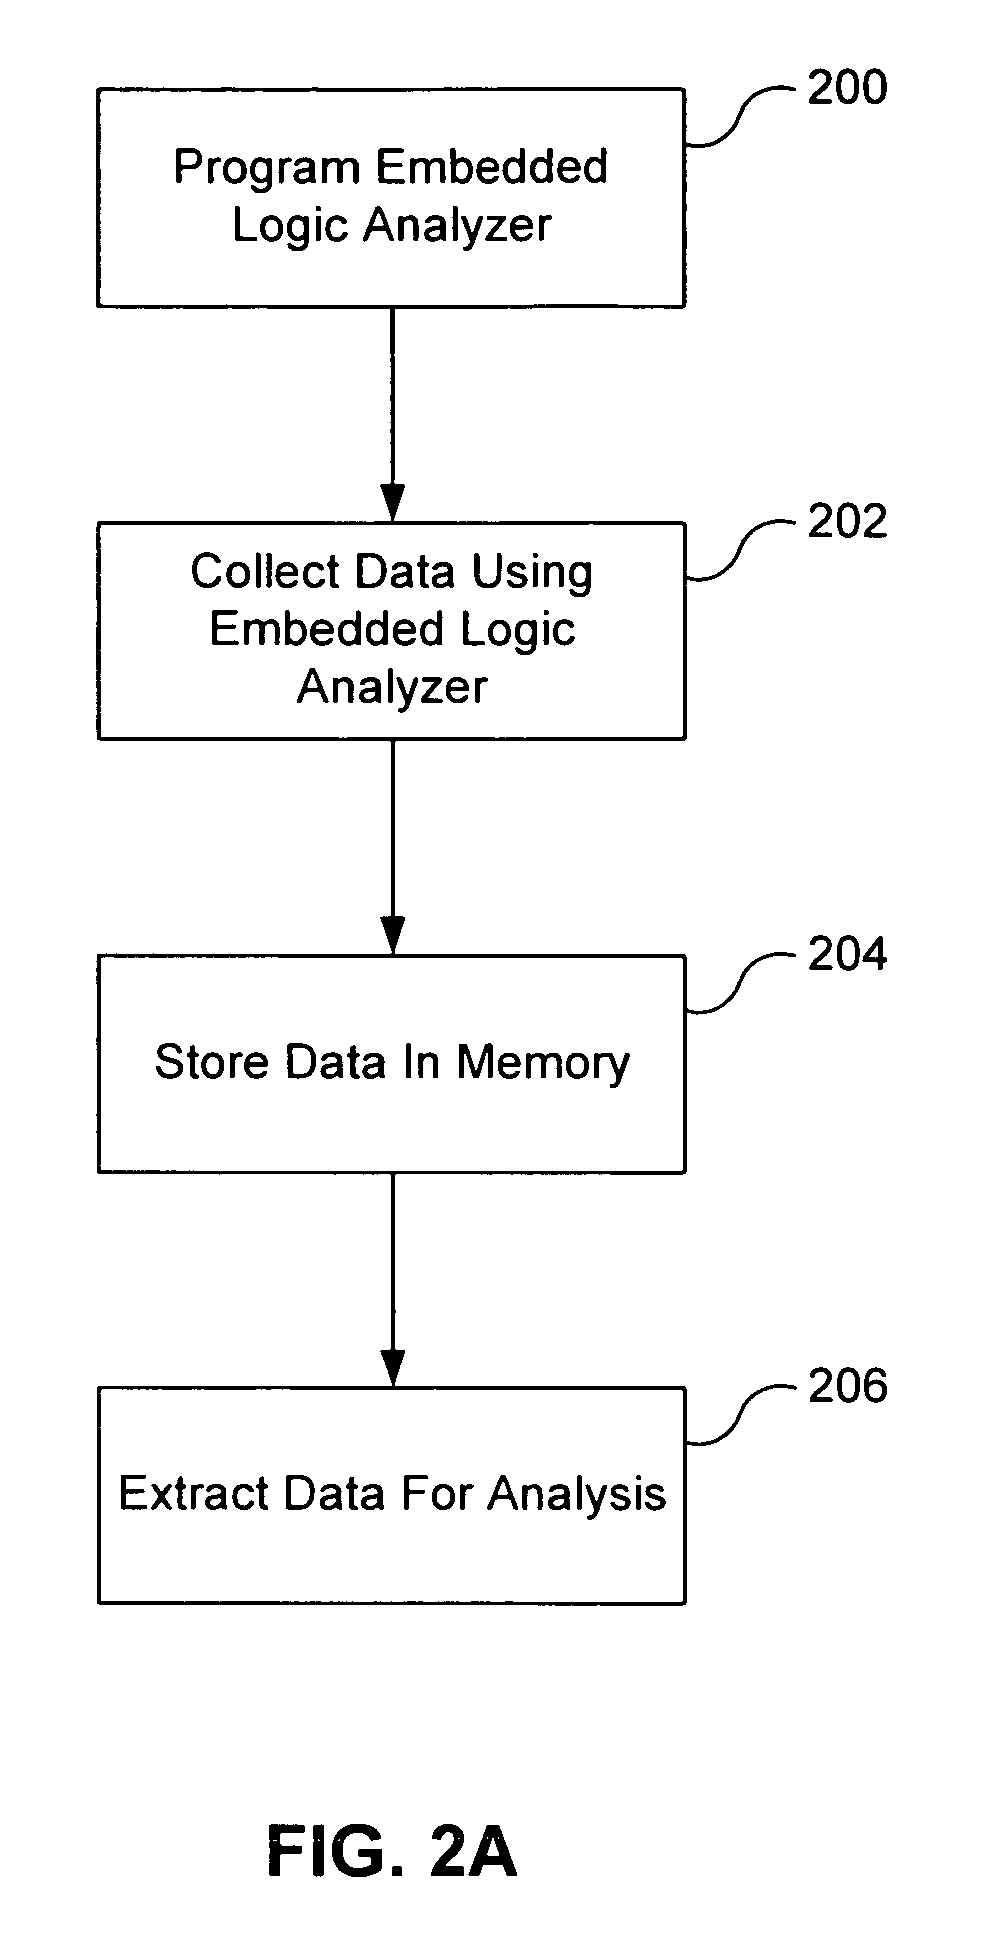 Embedded logic analyzer